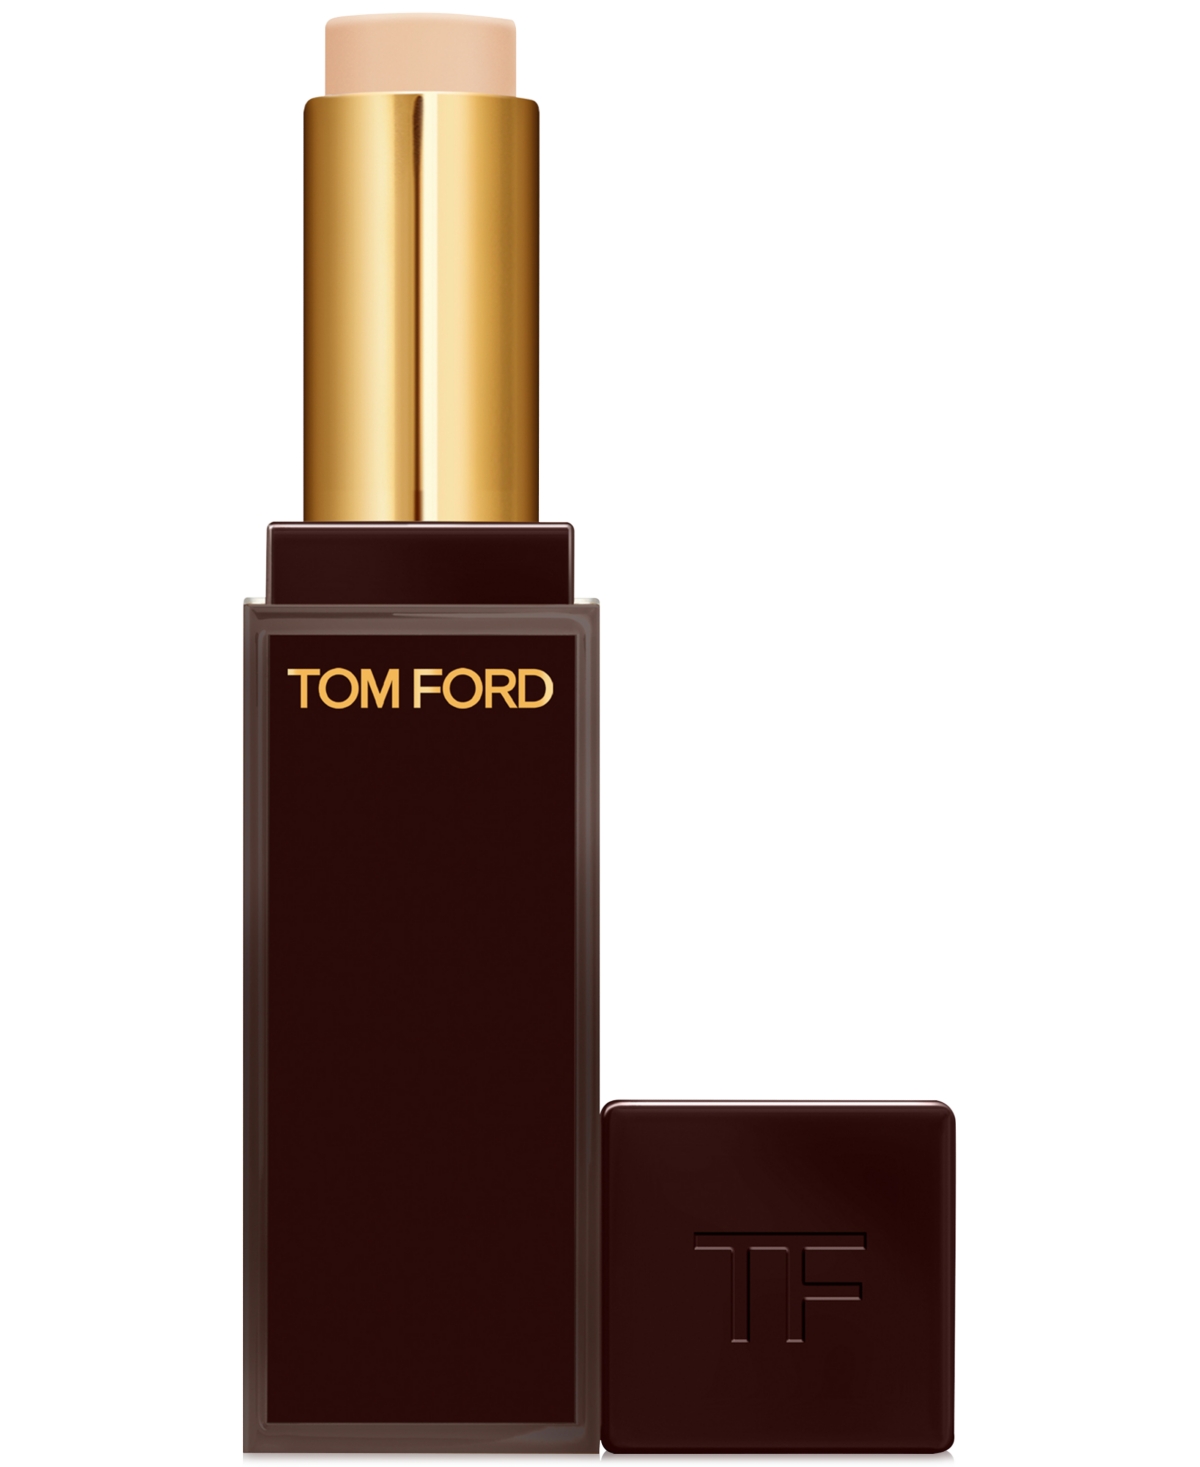 Tom Ford Traceless Soft Matte Concealer In C Bare (fair Skin With Subtle Pink Under